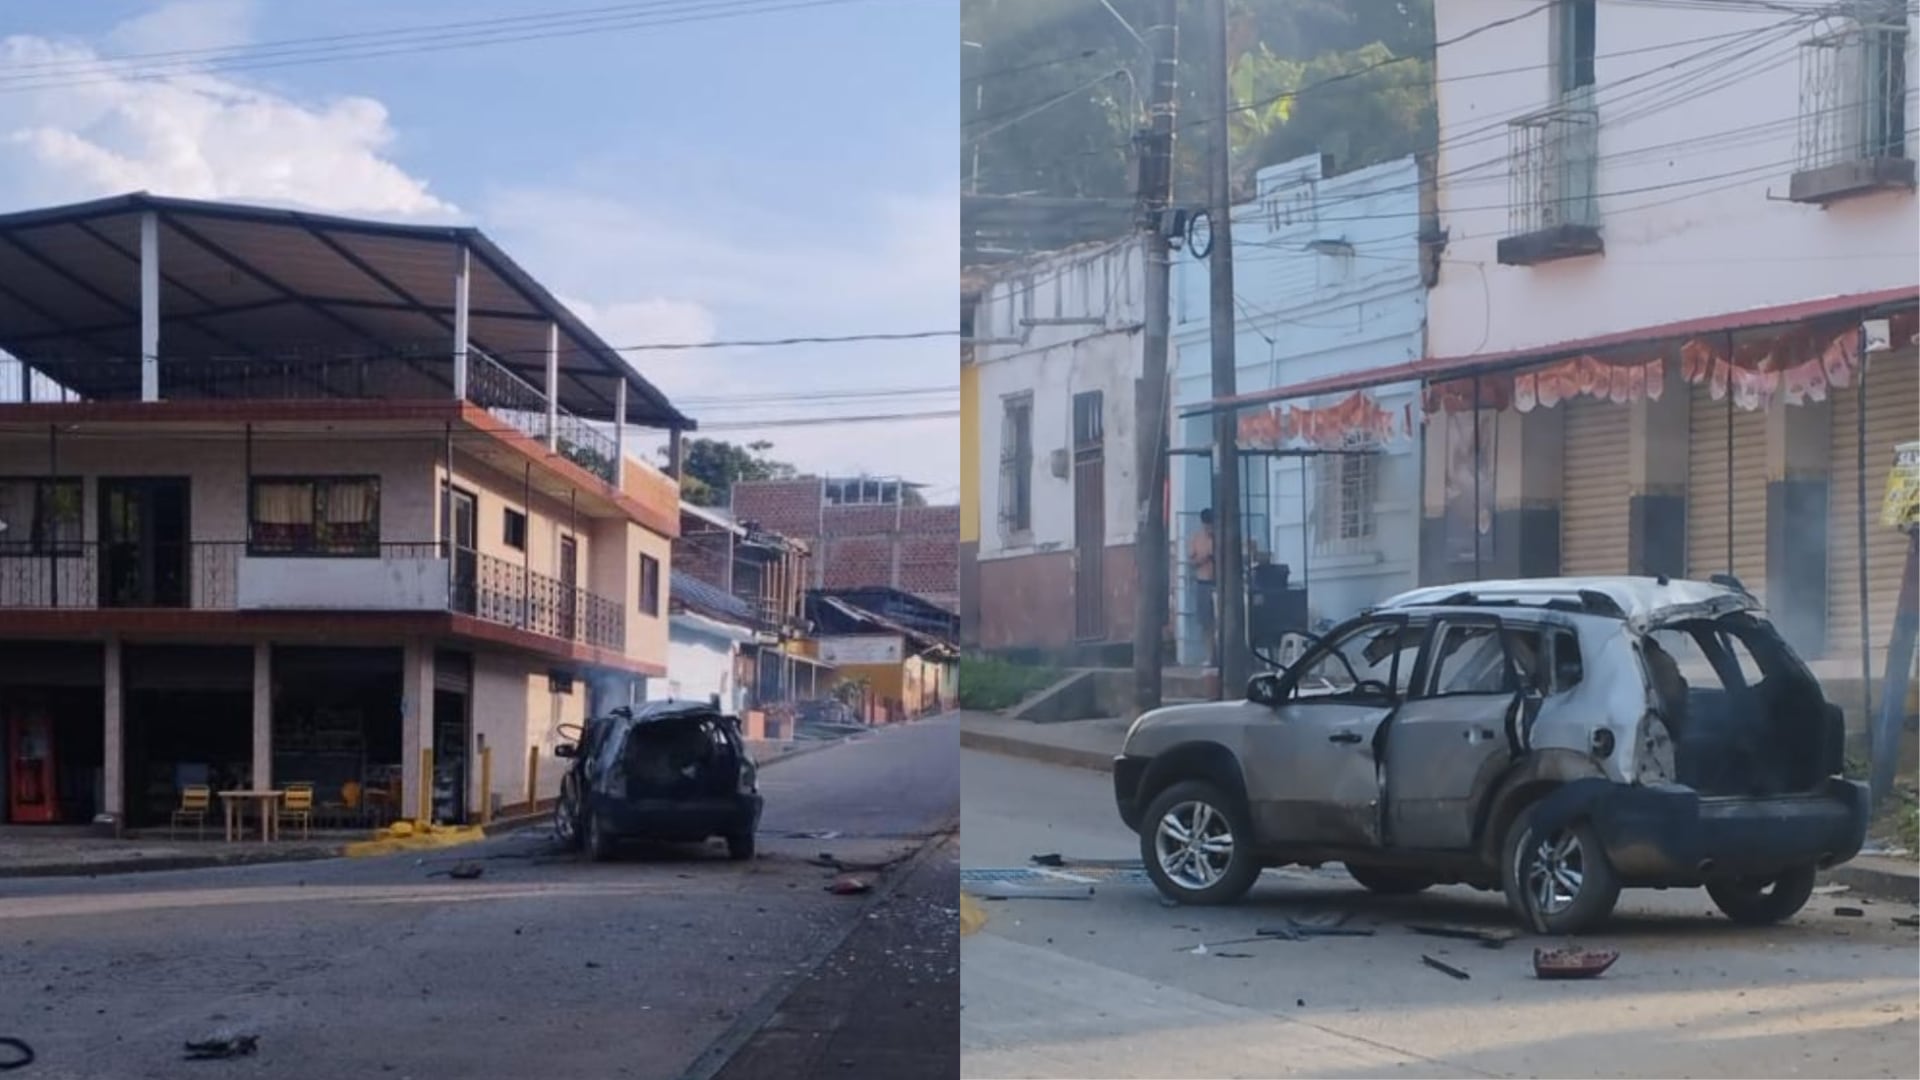 Carro bomba en Jamundí, Valle del Cauca: reportan atentado contra subestación de Policía